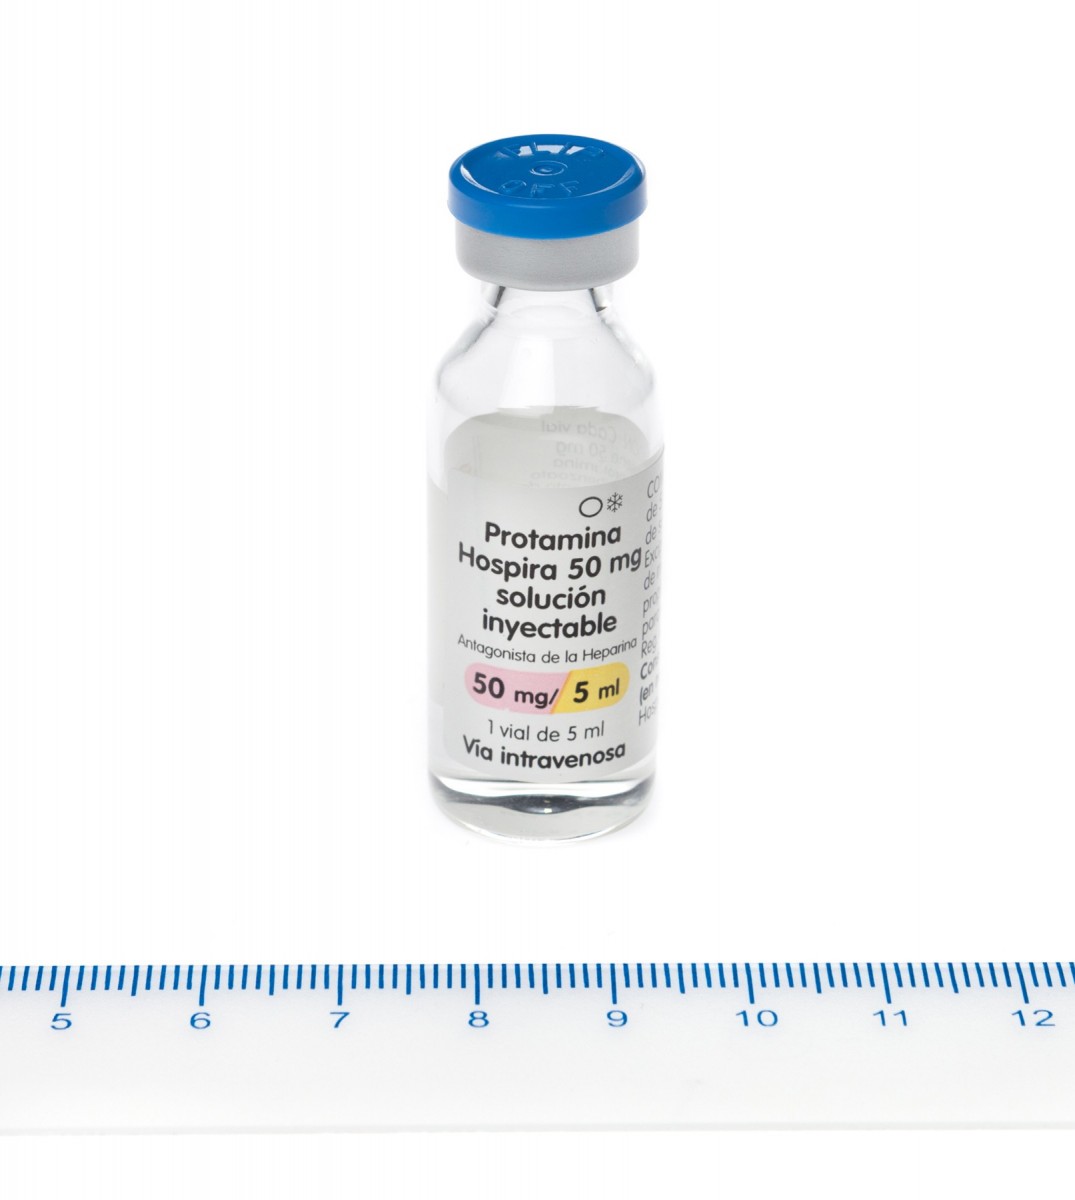 PROTAMINA HOSPIRA 10 mg/ml SOLUCION INYECTABLE , 100 viales de 5 ml fotografía de la forma farmacéutica.